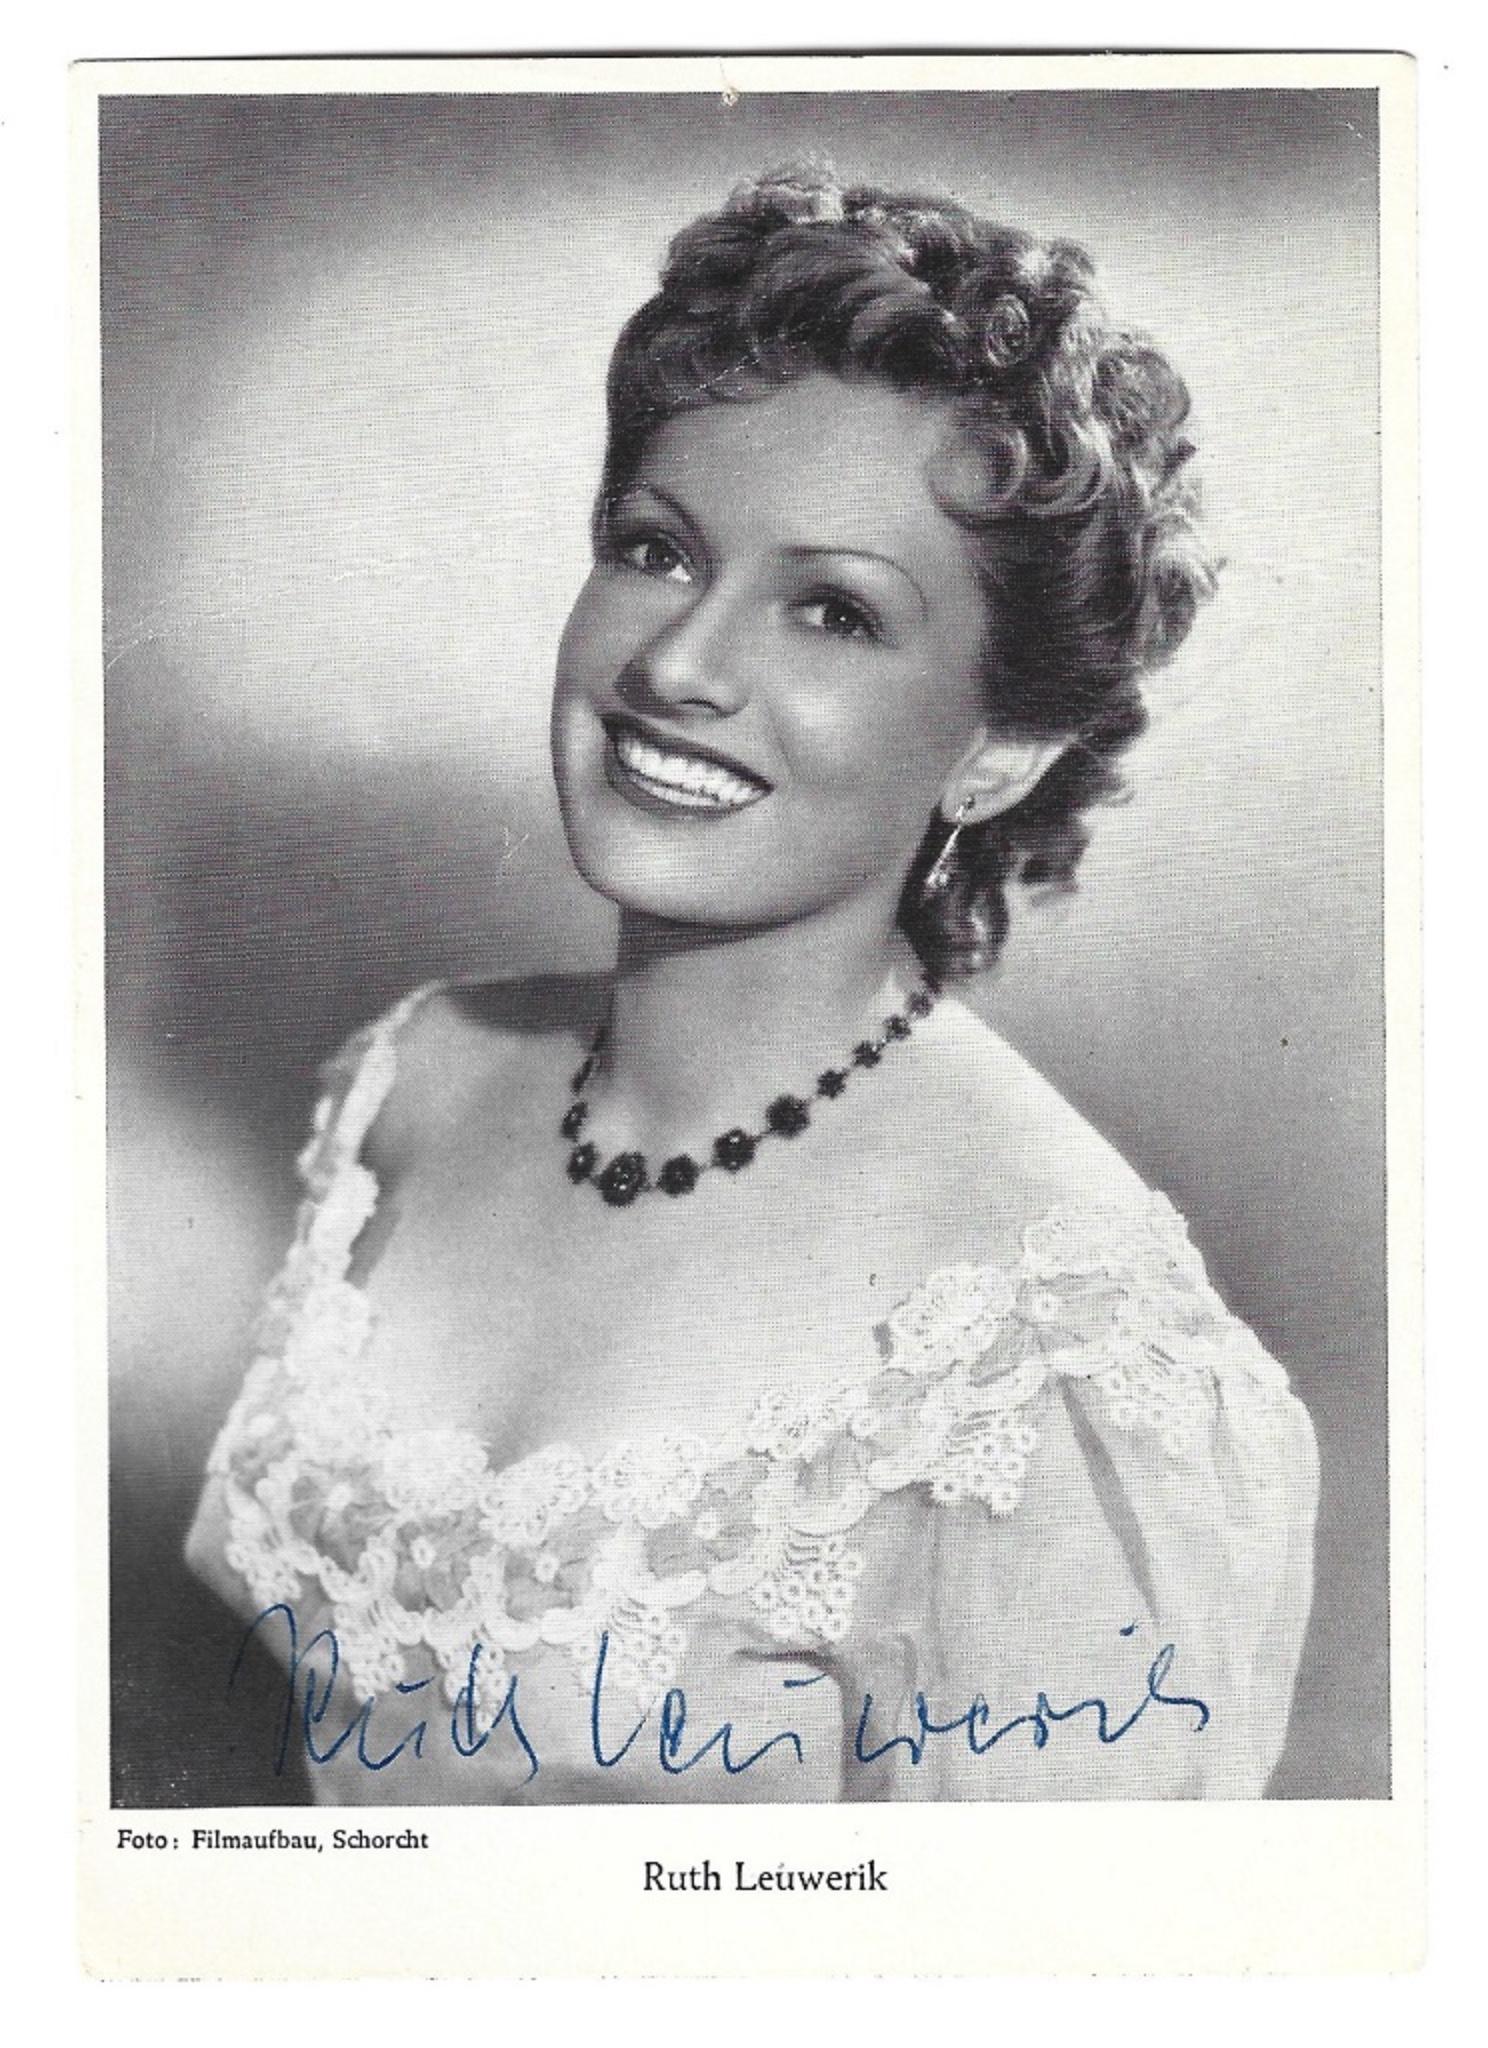 Unknown Portrait Photograph - Autographed Portrait of Ruth Leuwerik - Vintage b/w Postcard - 1950s